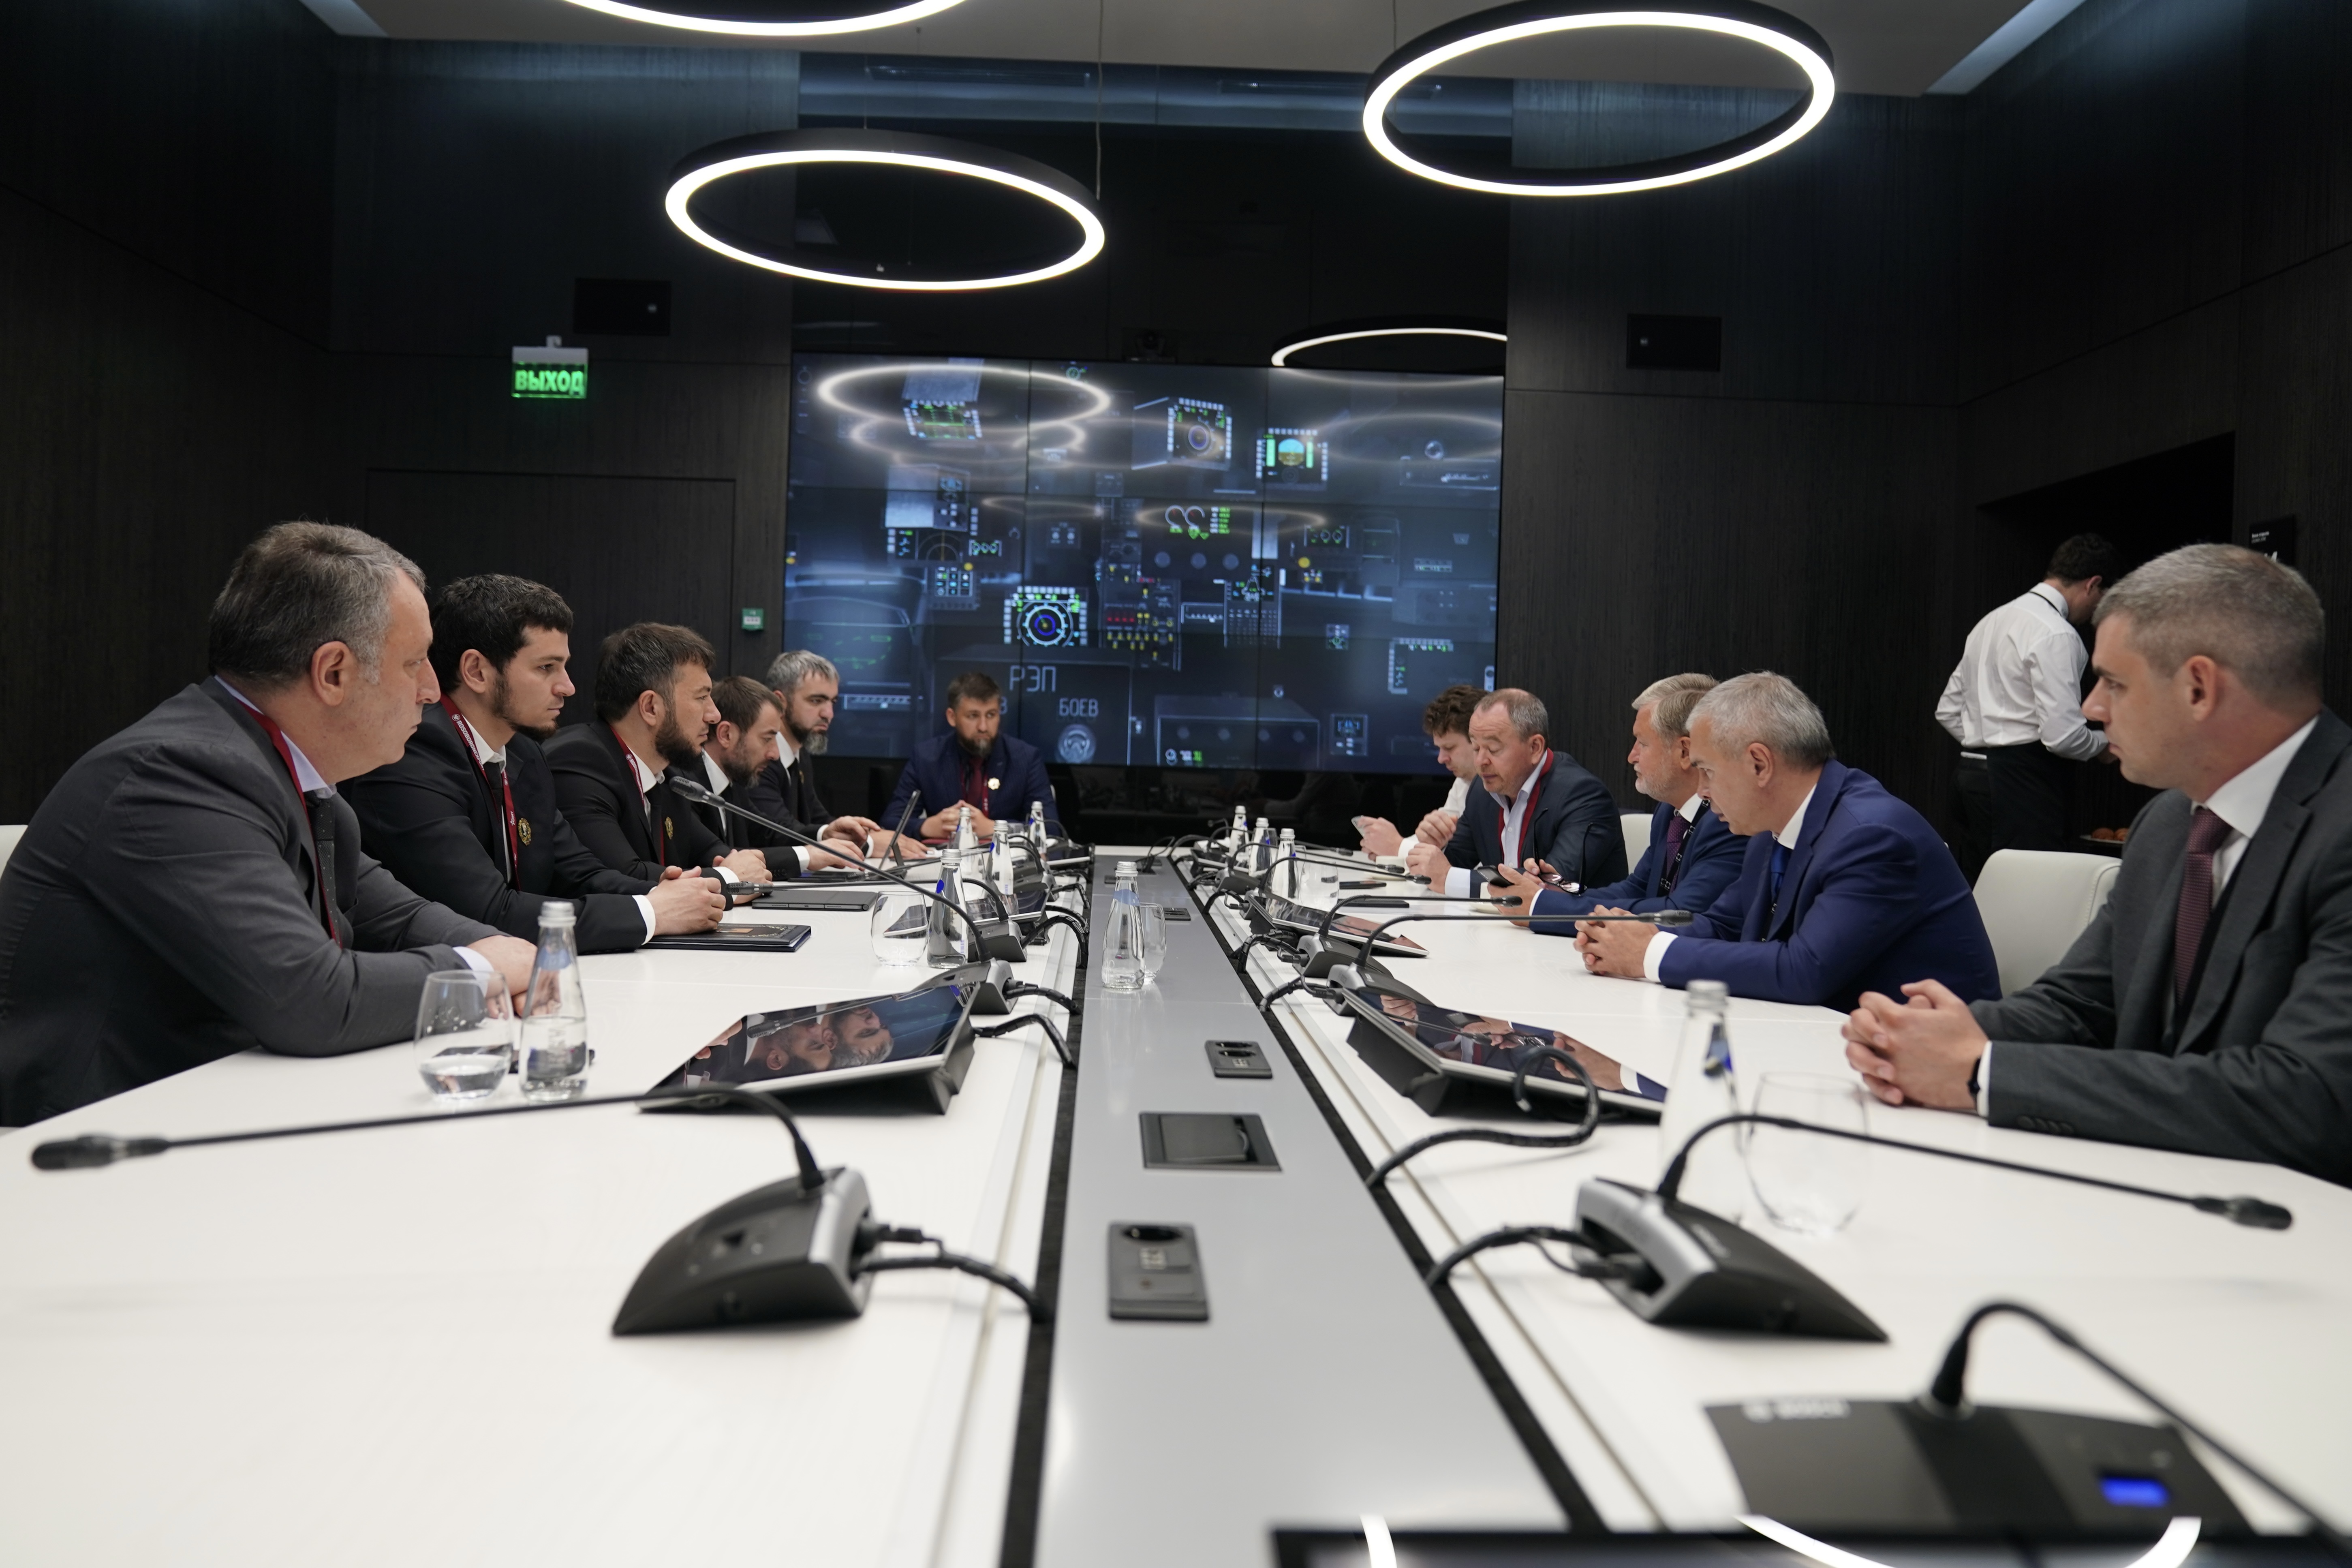 Хас-Магомед Кадыров принял участие в совещании с представителями госкорпорации Ростех.